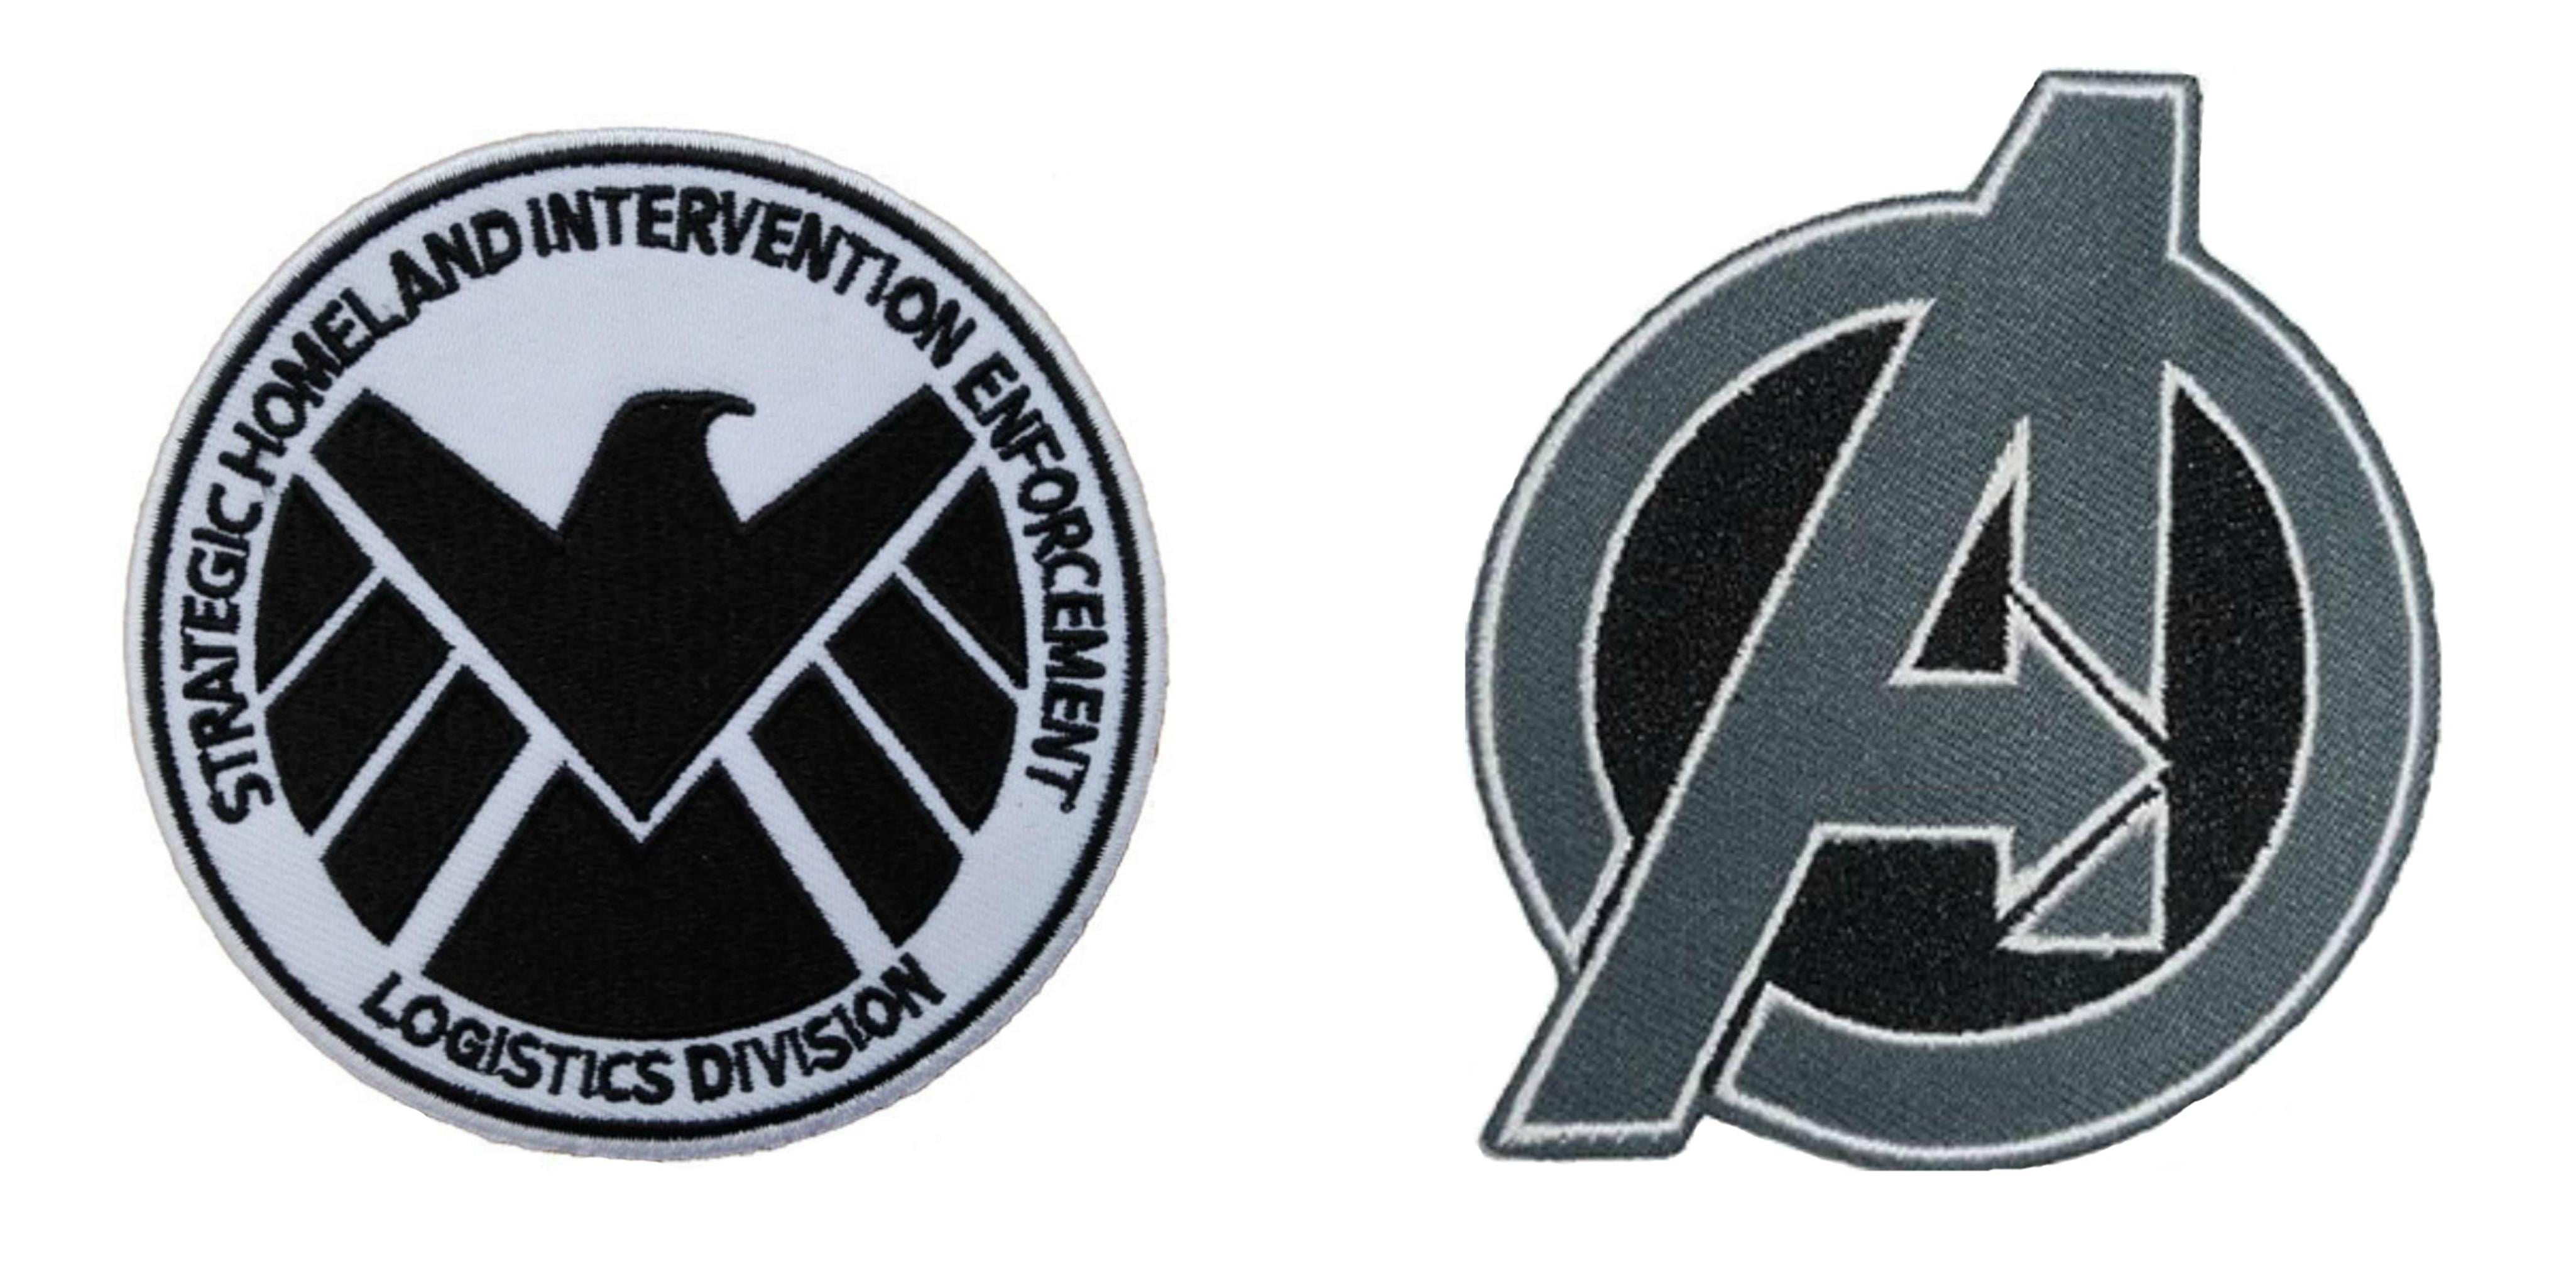 S.H.I.E.L.D. strike team logo by Uskok on DeviantArt